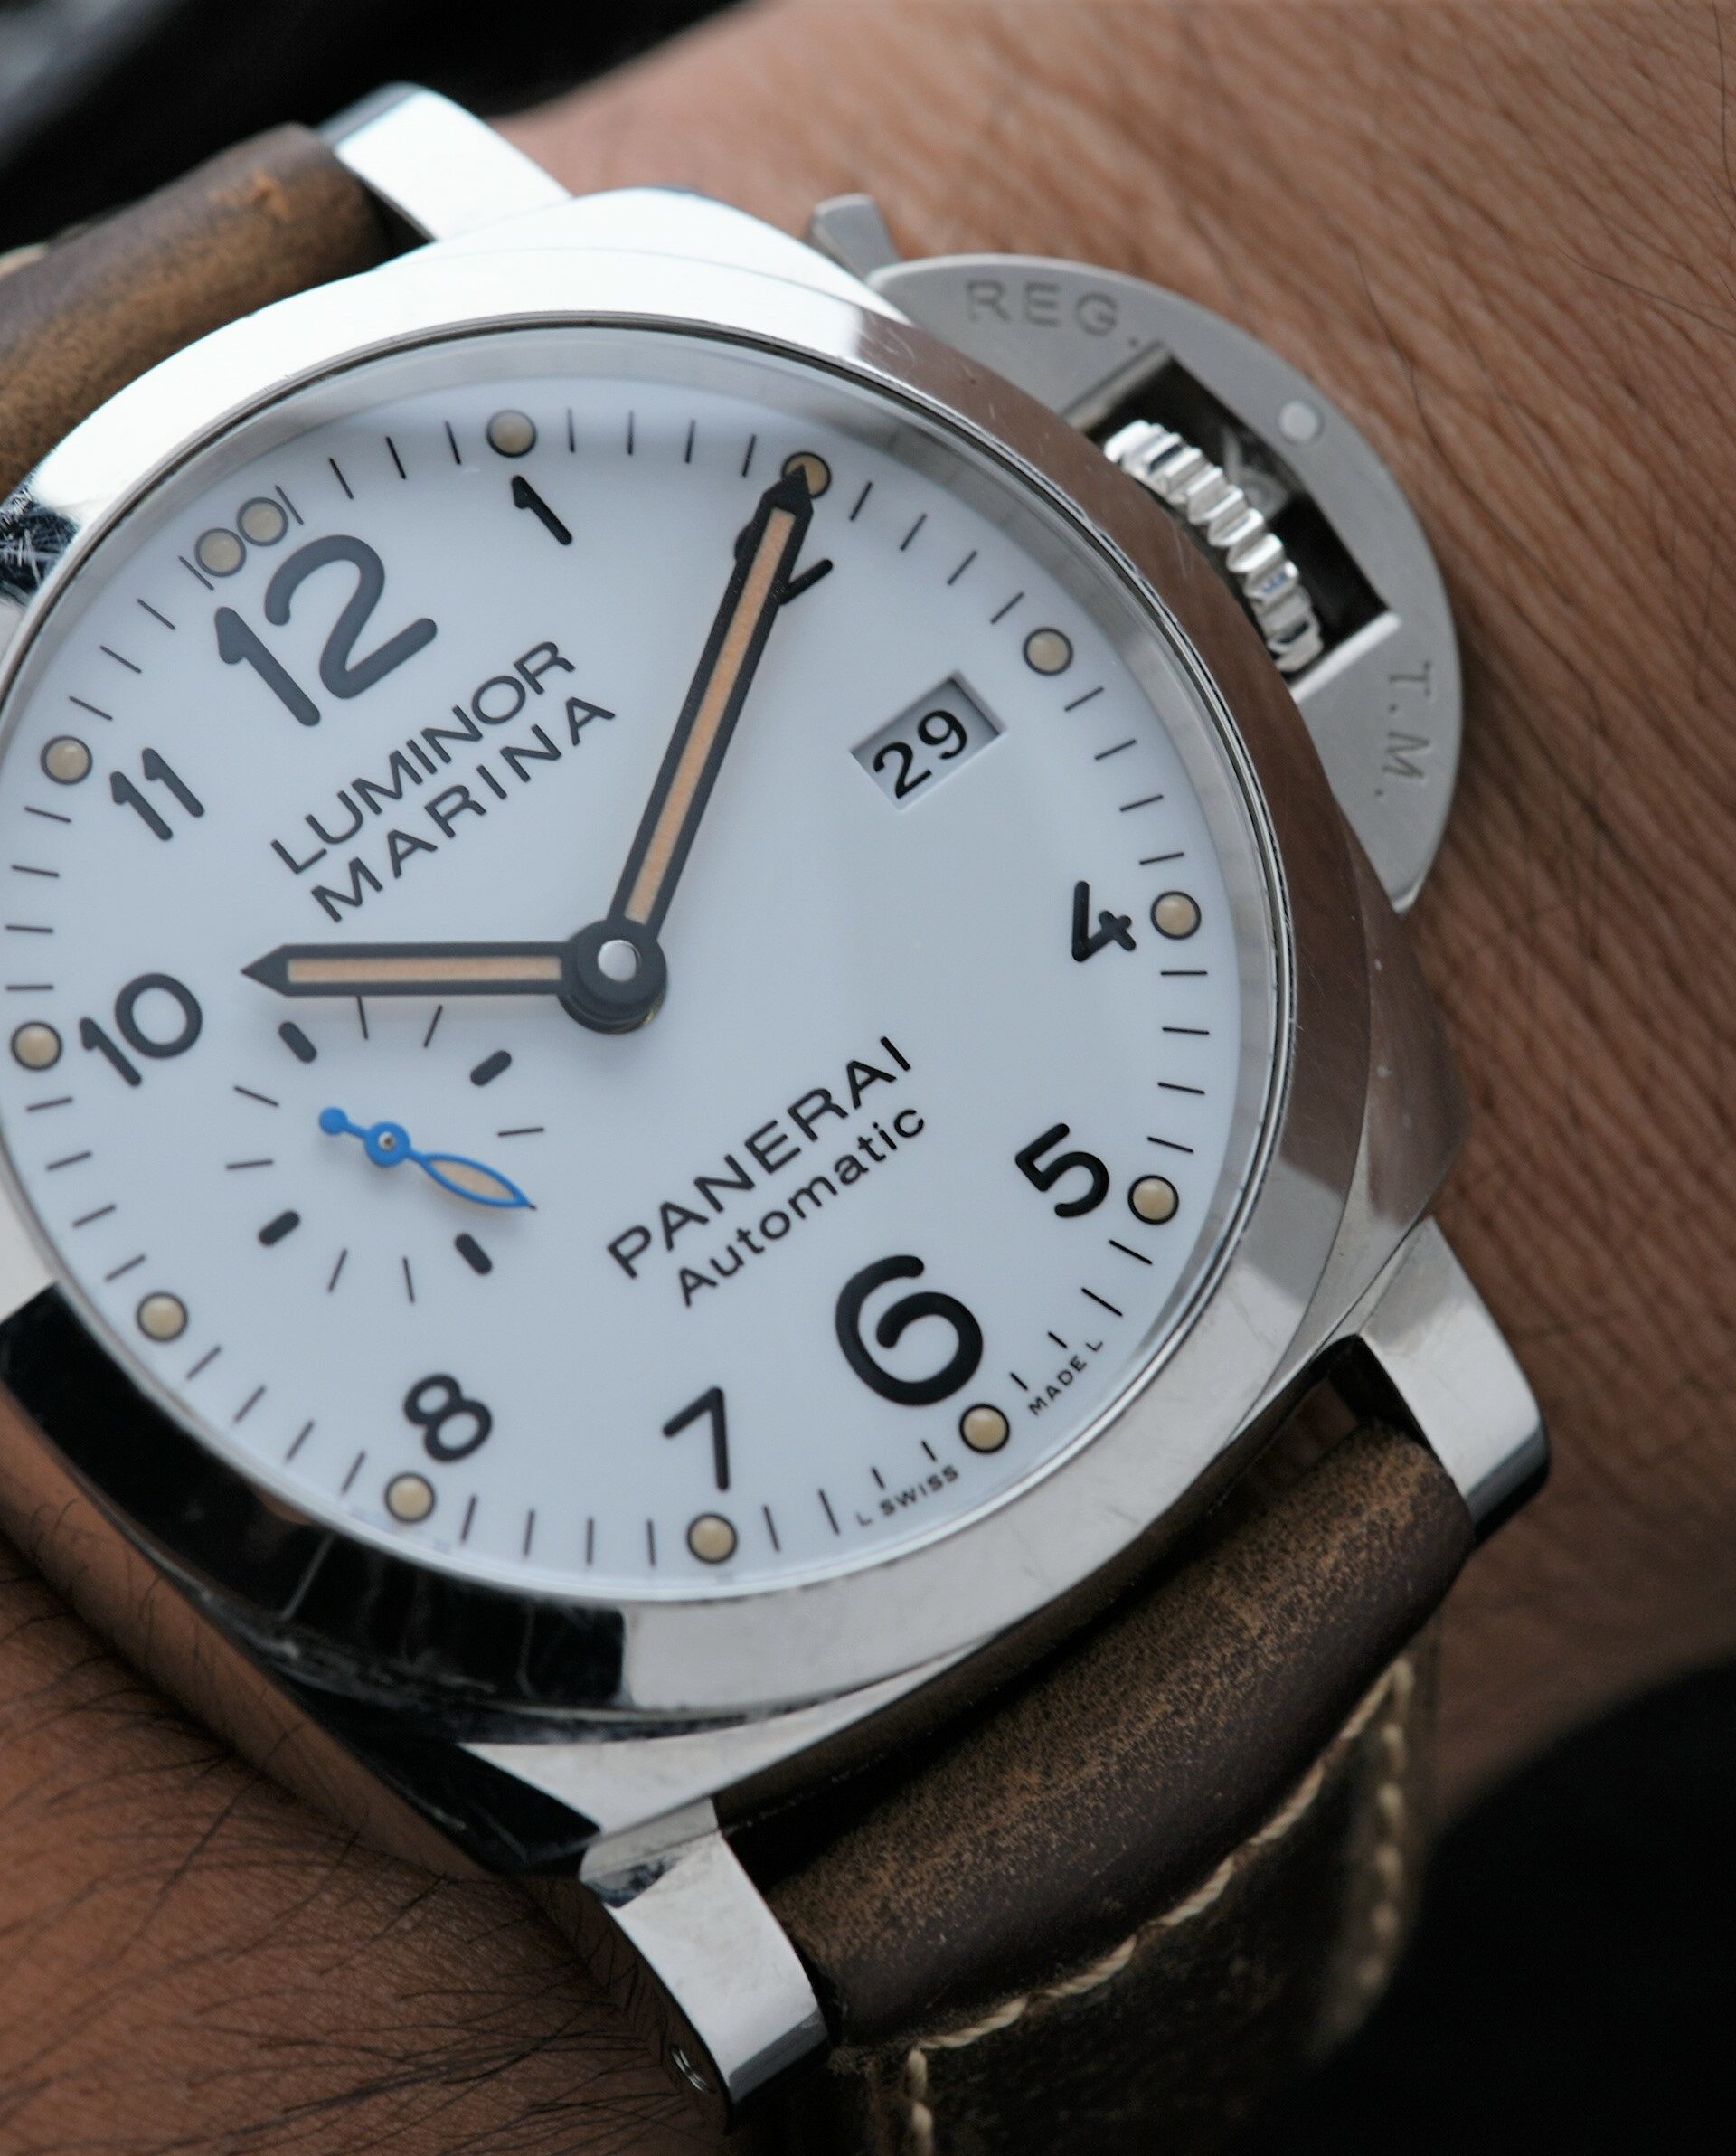 Panerai Luminor Marina 1950 3 Days Automatic Pam01499 Automatic wristwatch featured on the wrist.